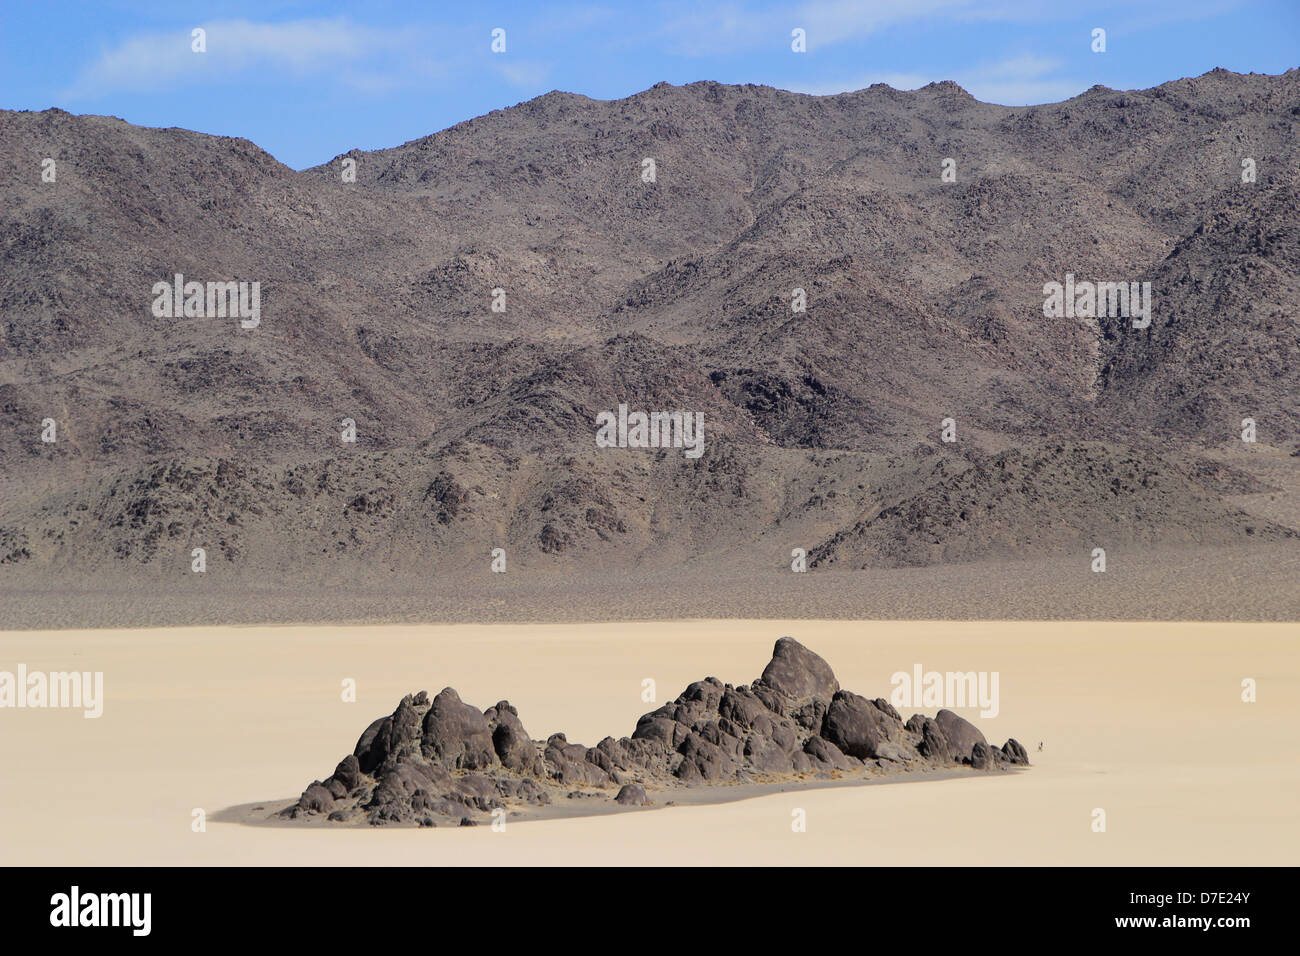 L'île en tribune, Racetrack Playa, Death Valley National Park, California, USA Banque D'Images